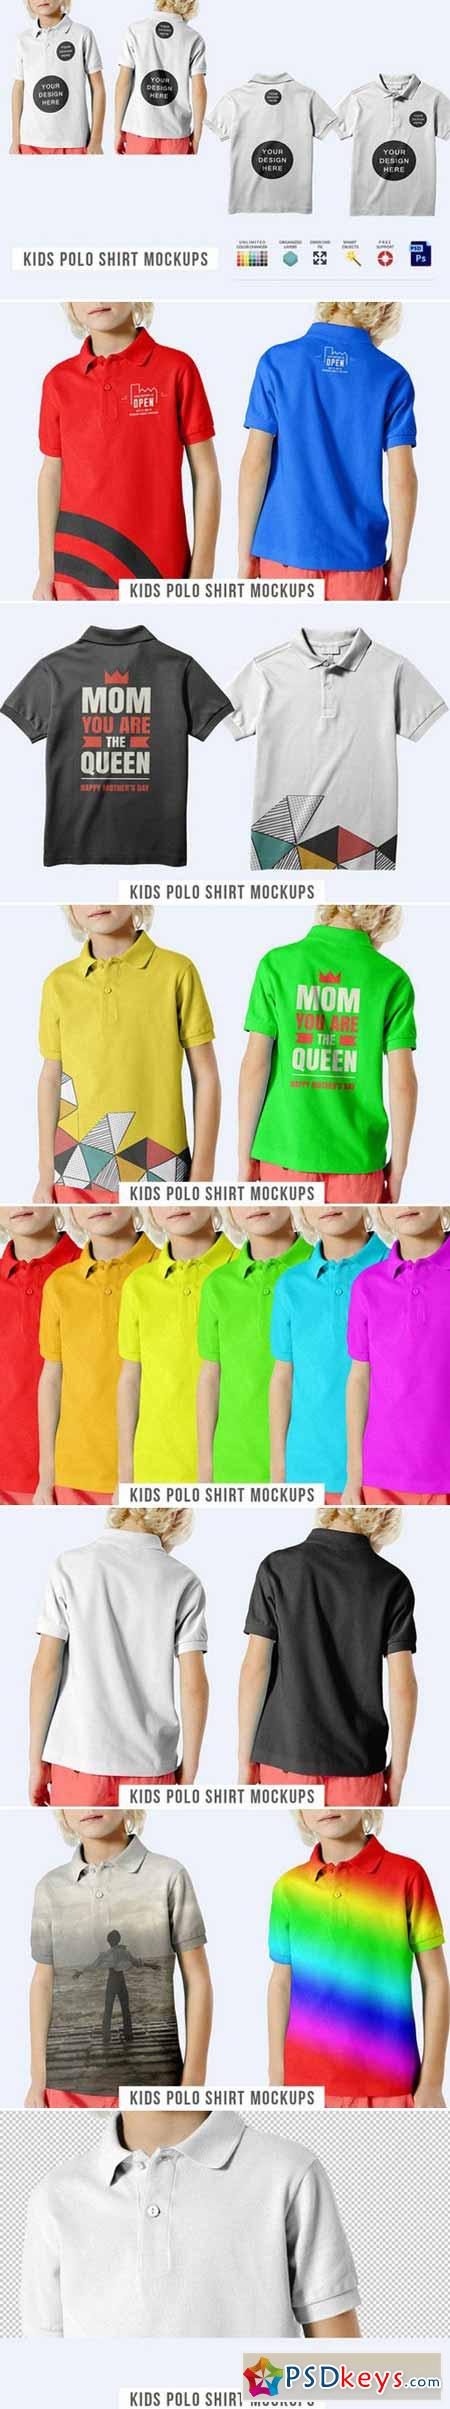 Kids Polo Shirt Mockups 460733